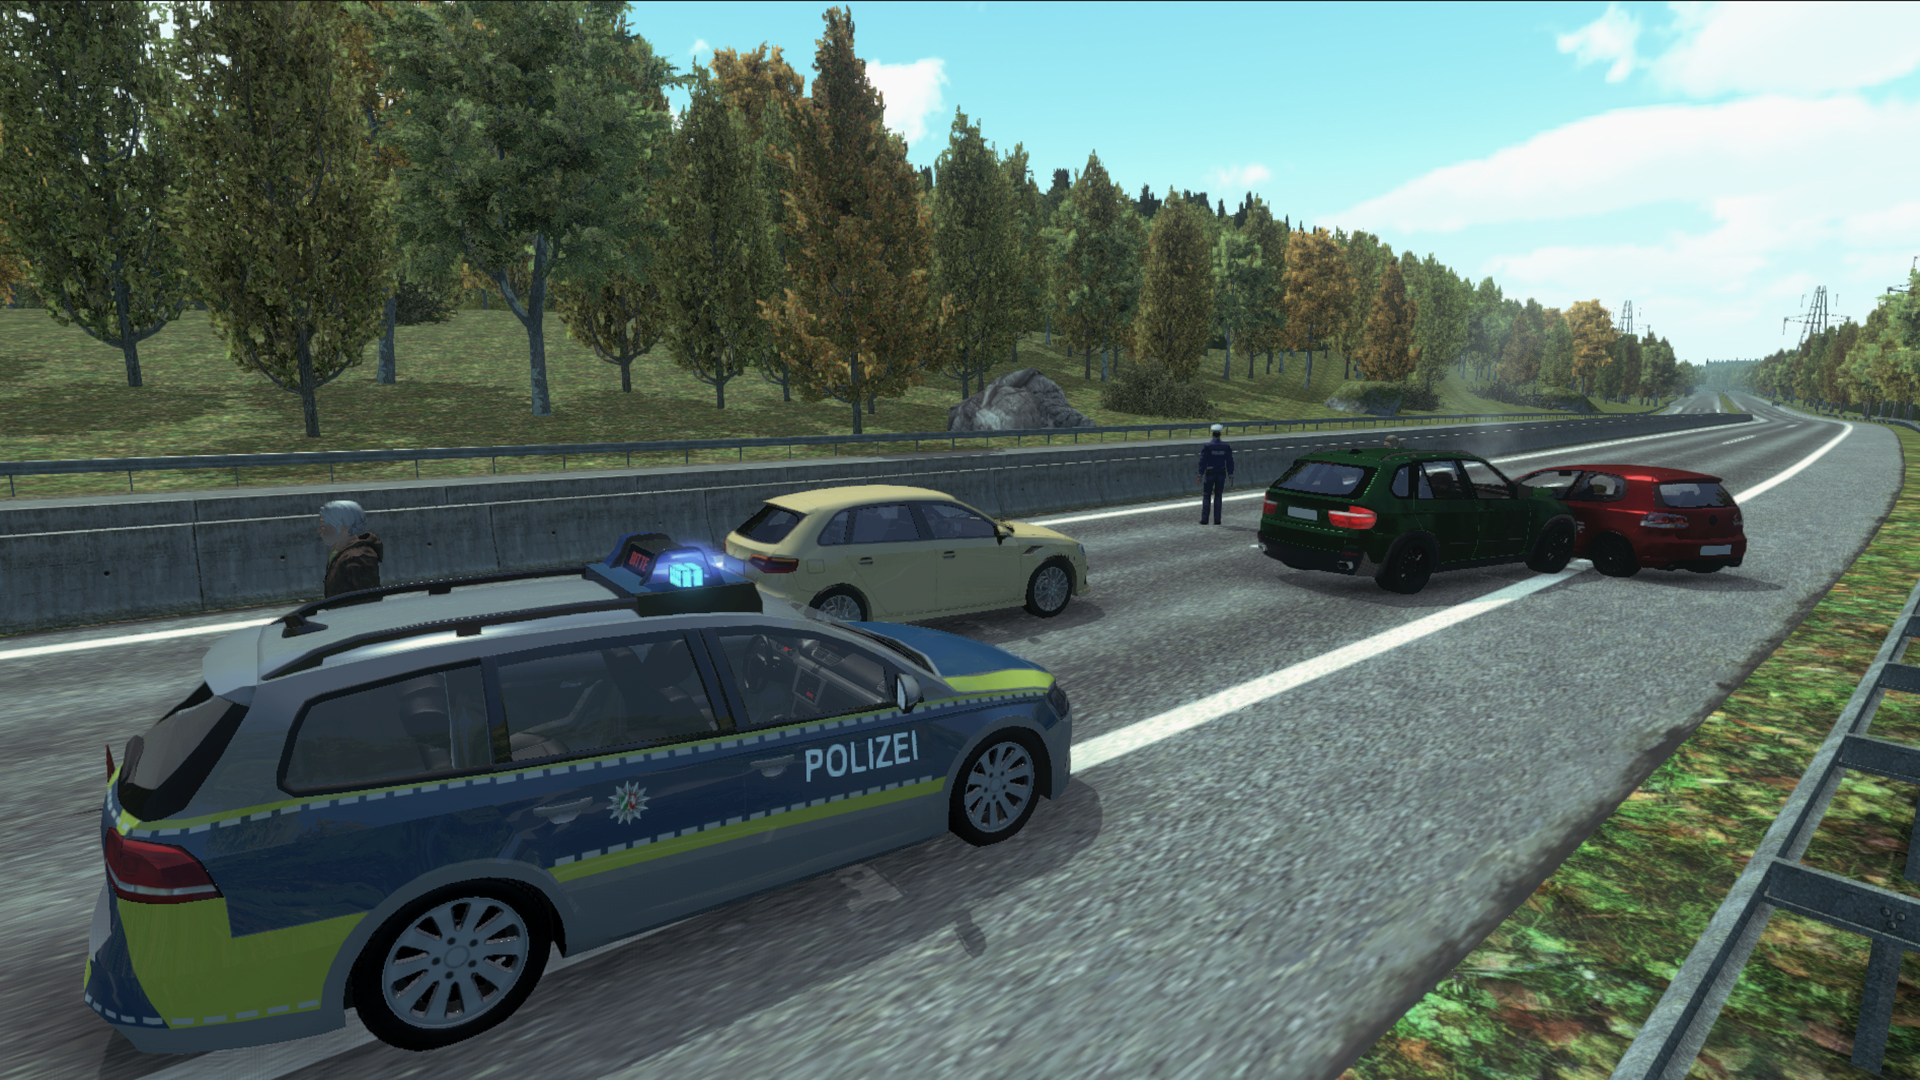 Steam on Simulator Autobahn Police